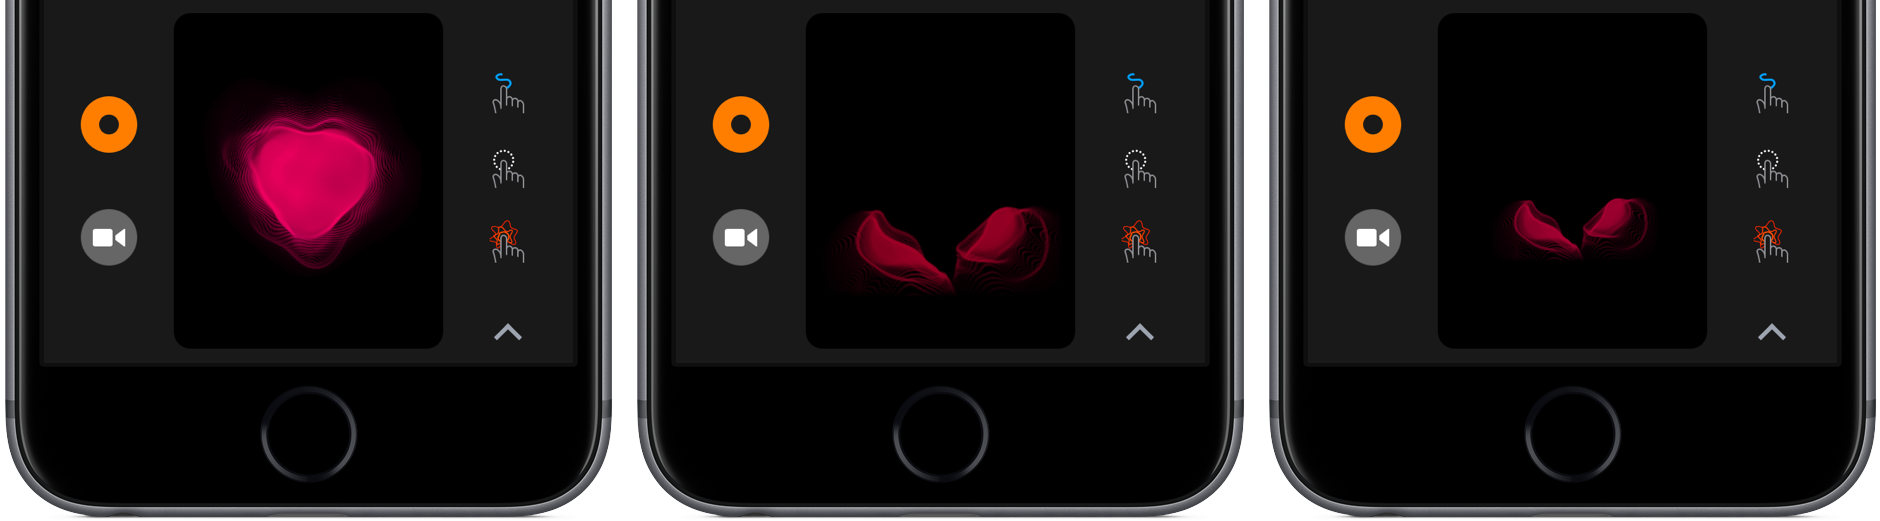 iOS 10 Digital Touch broken heart iPhone screenshot 002